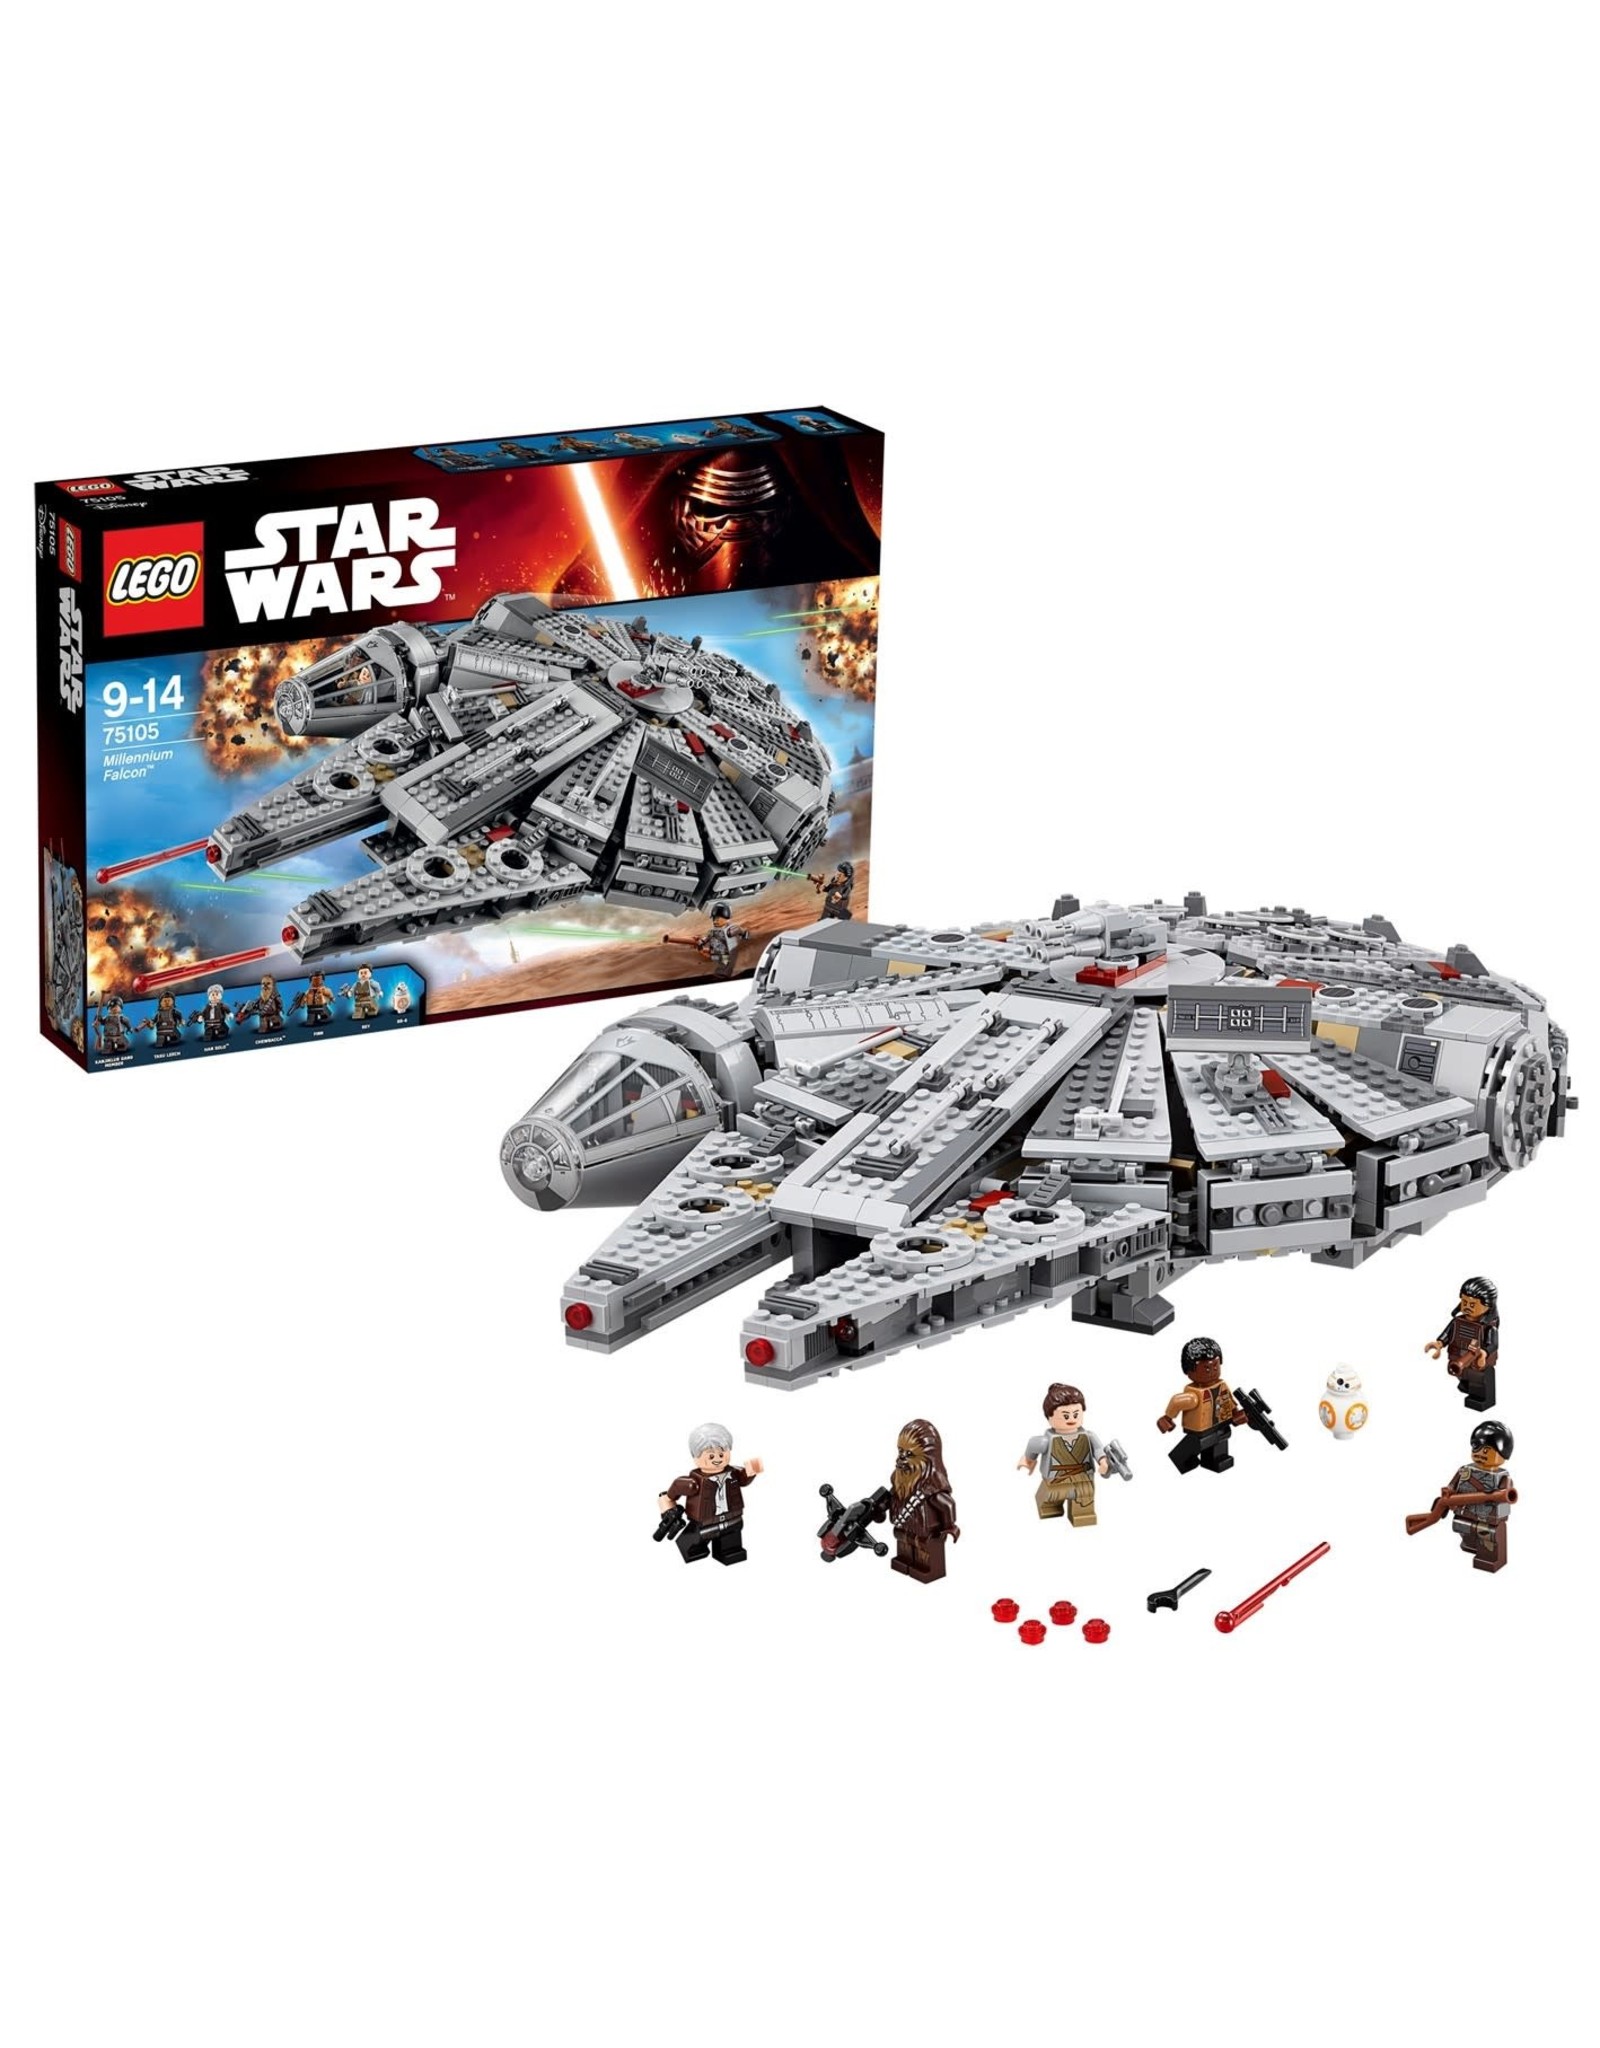 LEGO Lego Star Wars 75105 Milennium Falcon